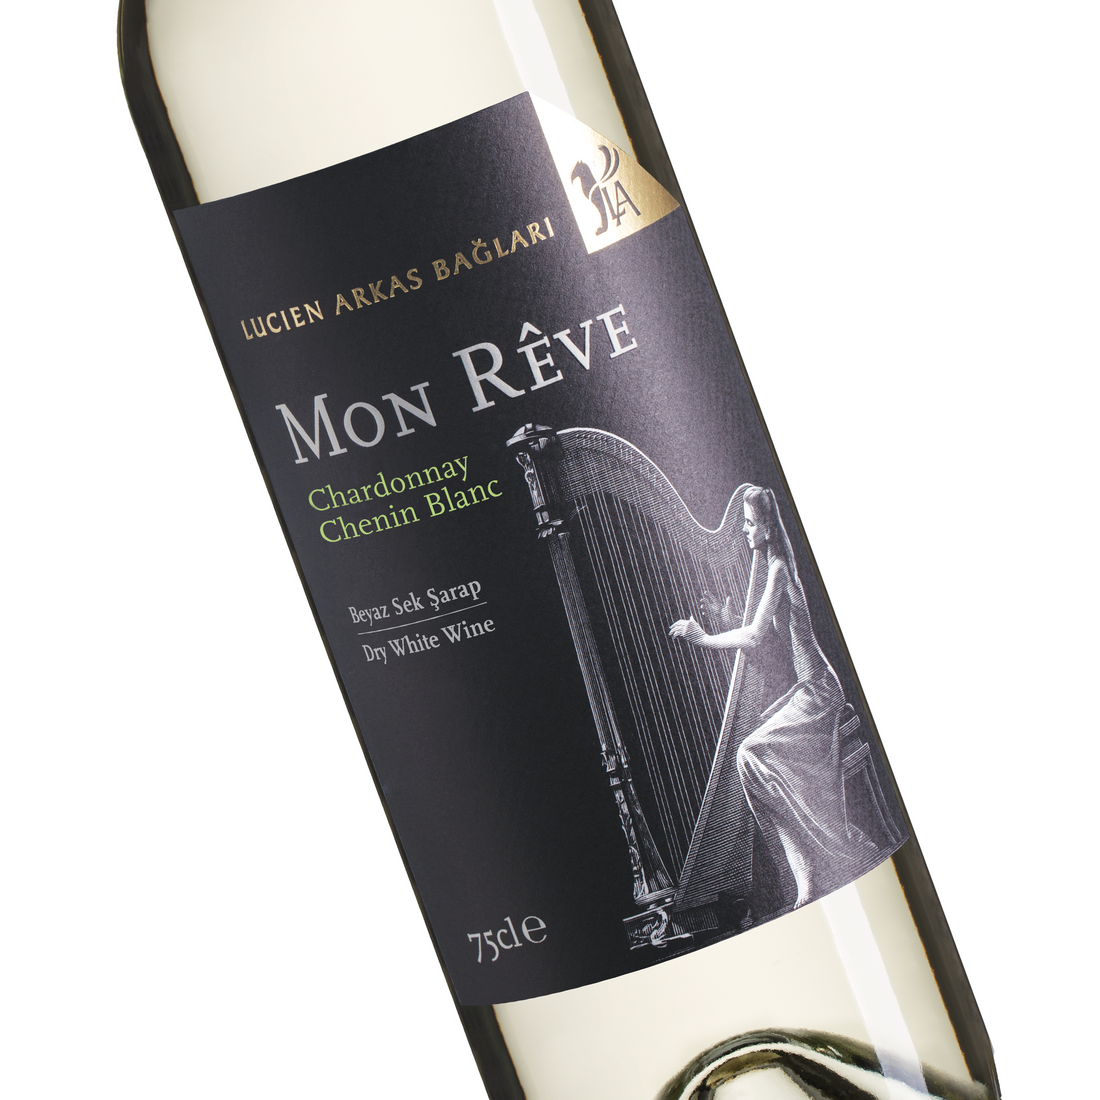 Lucien Arkas Mon Reve Chardonnay – Chenin Blanc 750ml Dry Turkish Organic White Wine | Lucien Arkas Mon Reve Chardonnay – Chenin Blanc Beyaz Sek Sarap | Dry White Wine